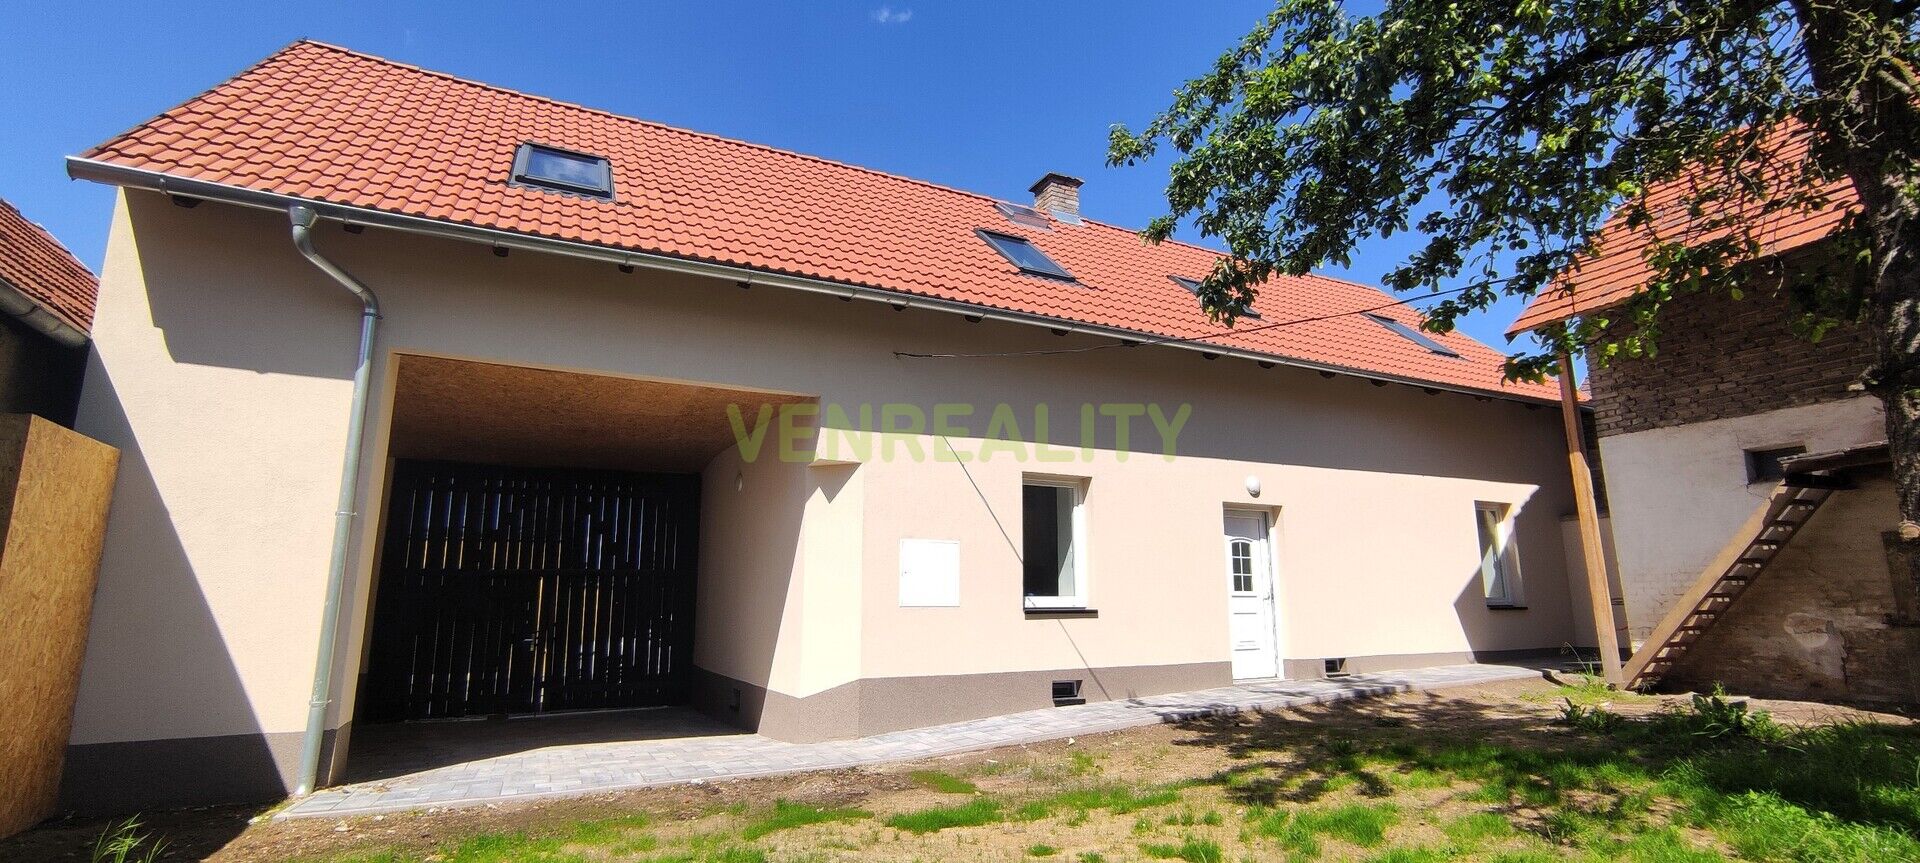 Prodej rodinného domu 4+kk, 140 m2, pozemek 411 m2, v obci Kněževes u Rakovníka, okr. Rakovník